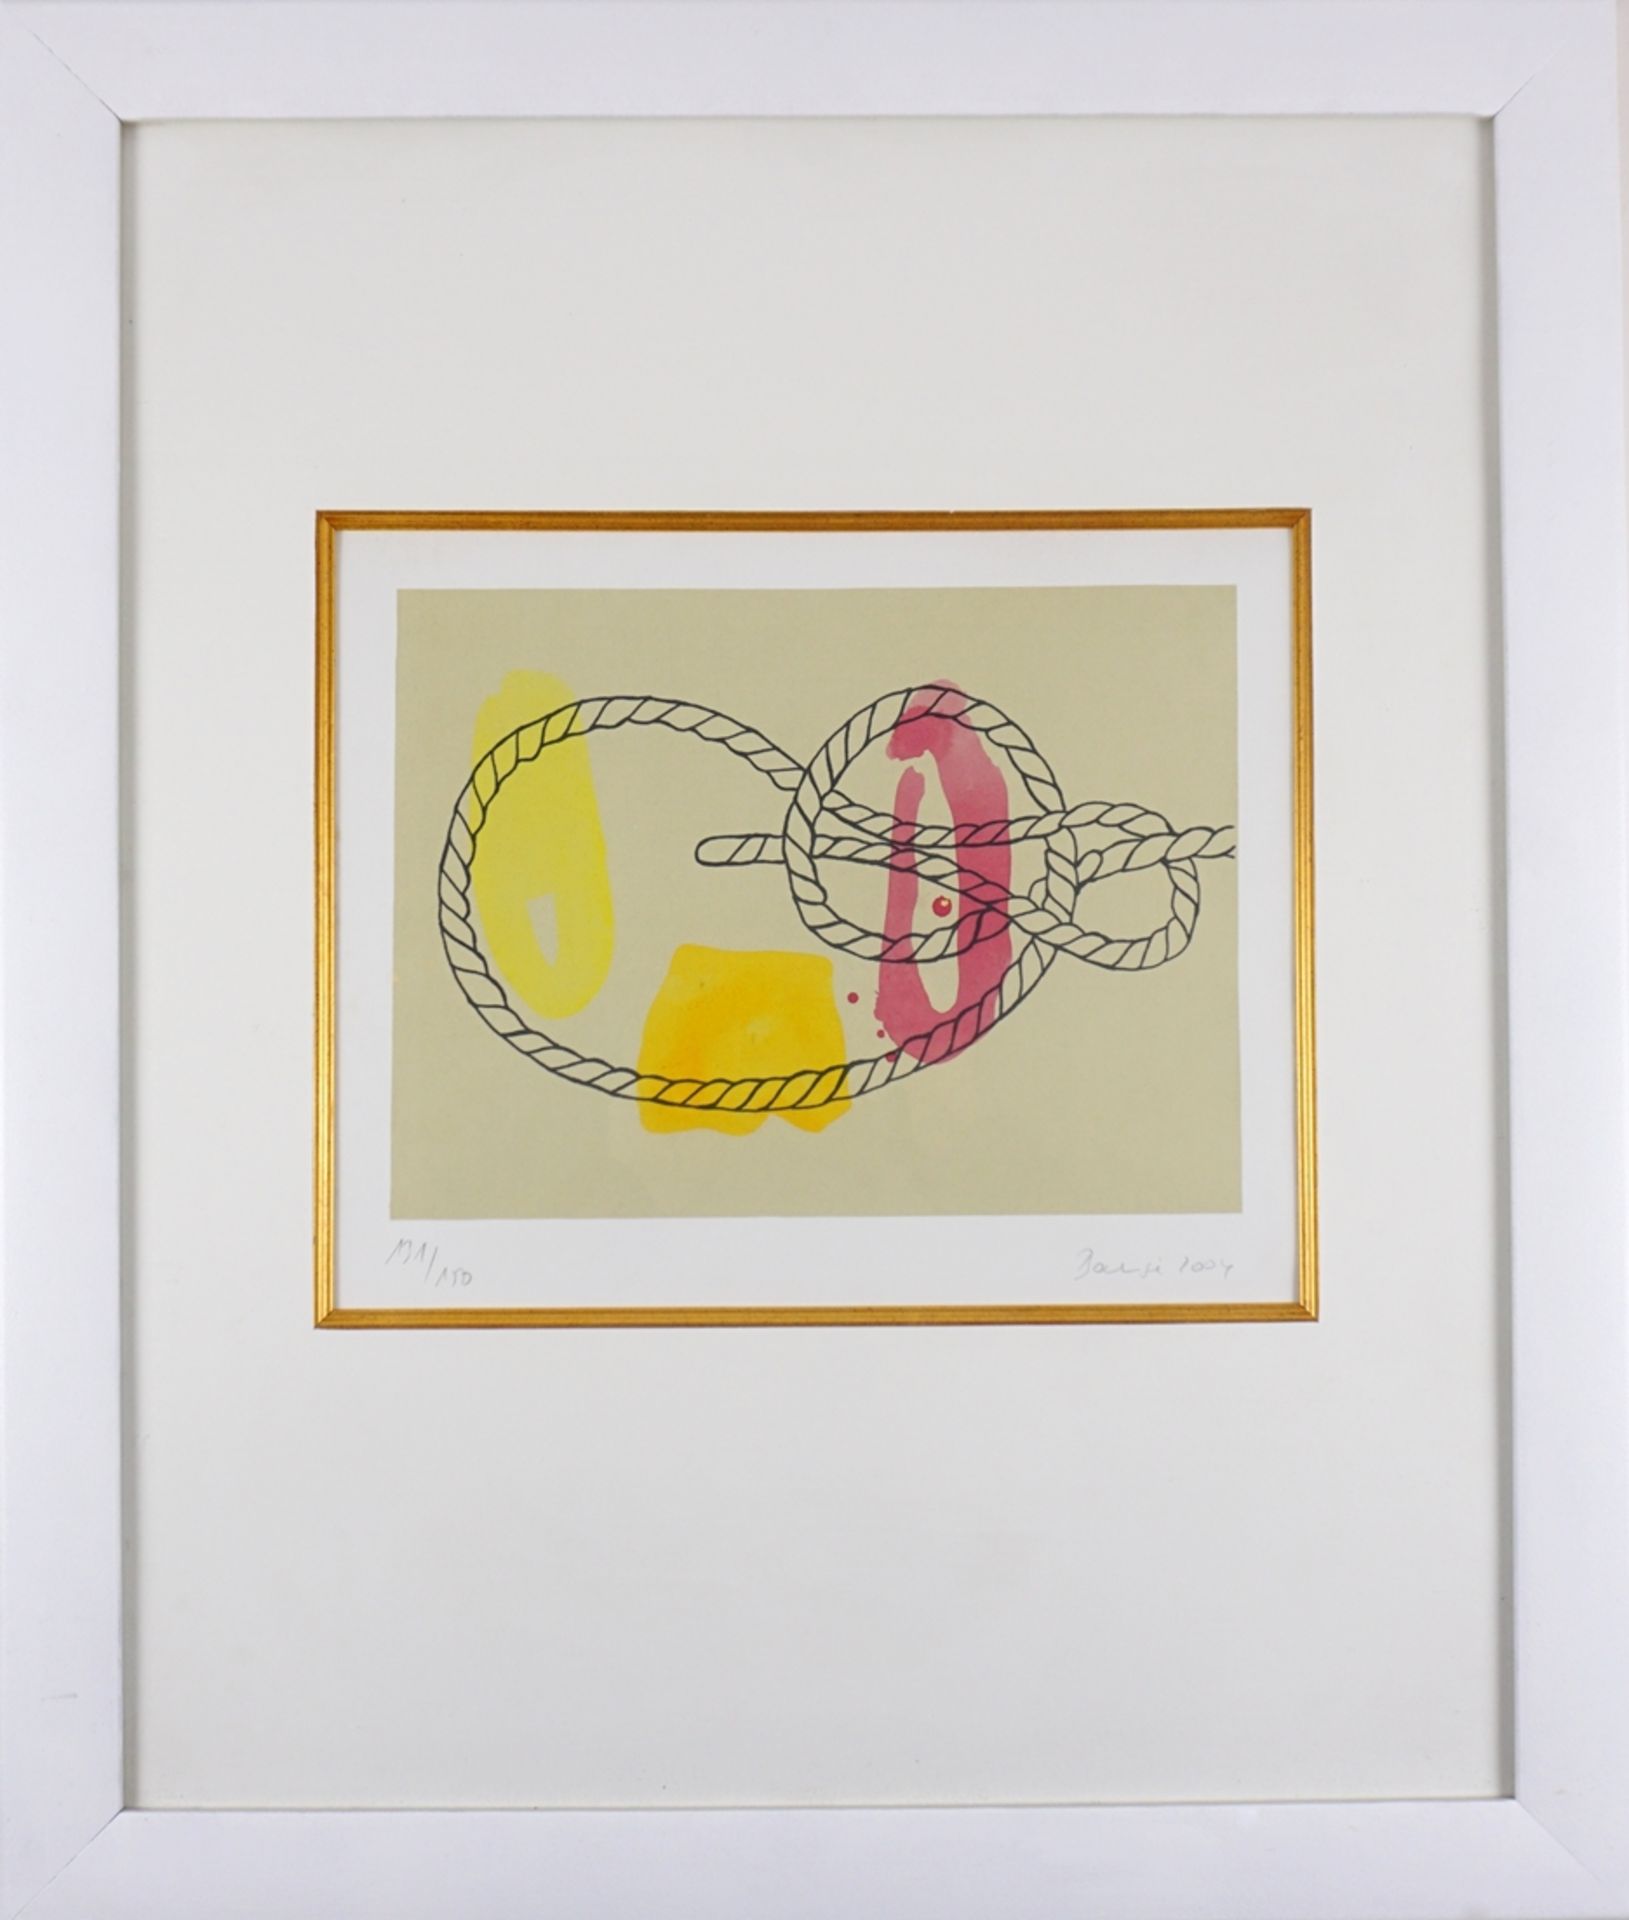 undeutlich signiert, 2 Farbsiebdrucke "Knoten", 2004